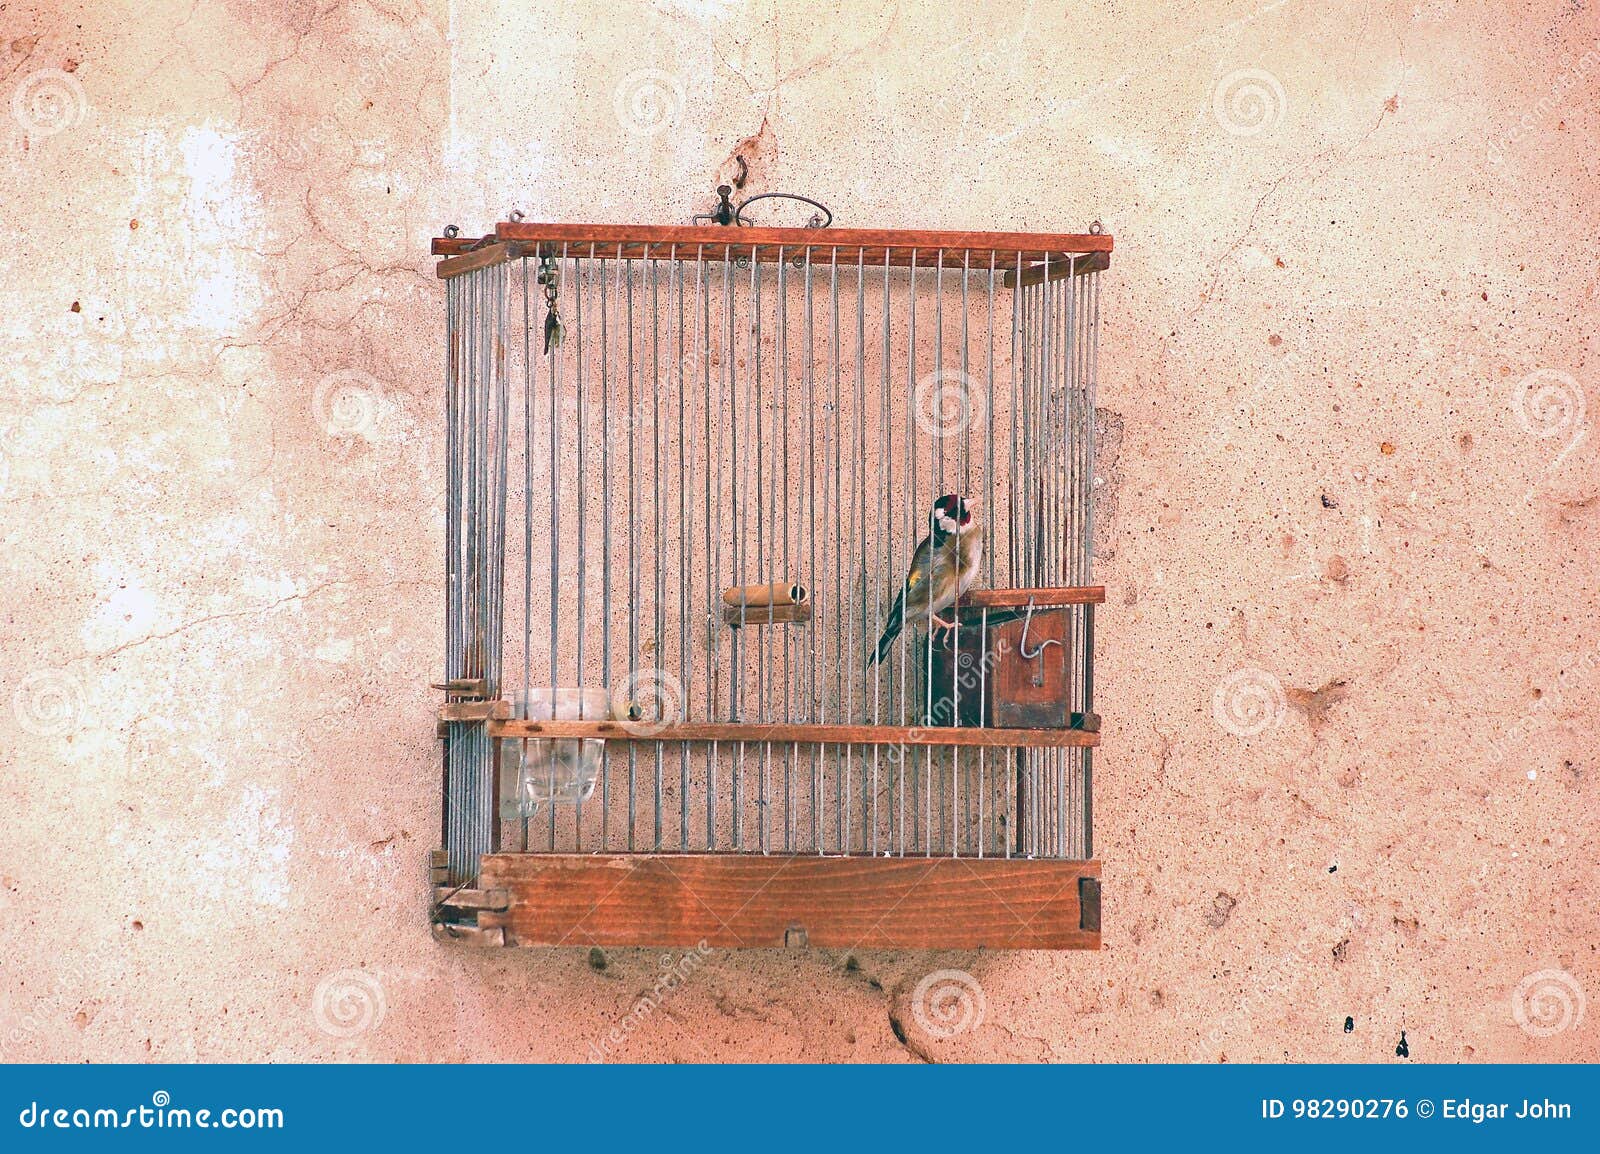 鹦鹉 关在笼子里 被困 - Pixabay上的免费照片 - Pixabay